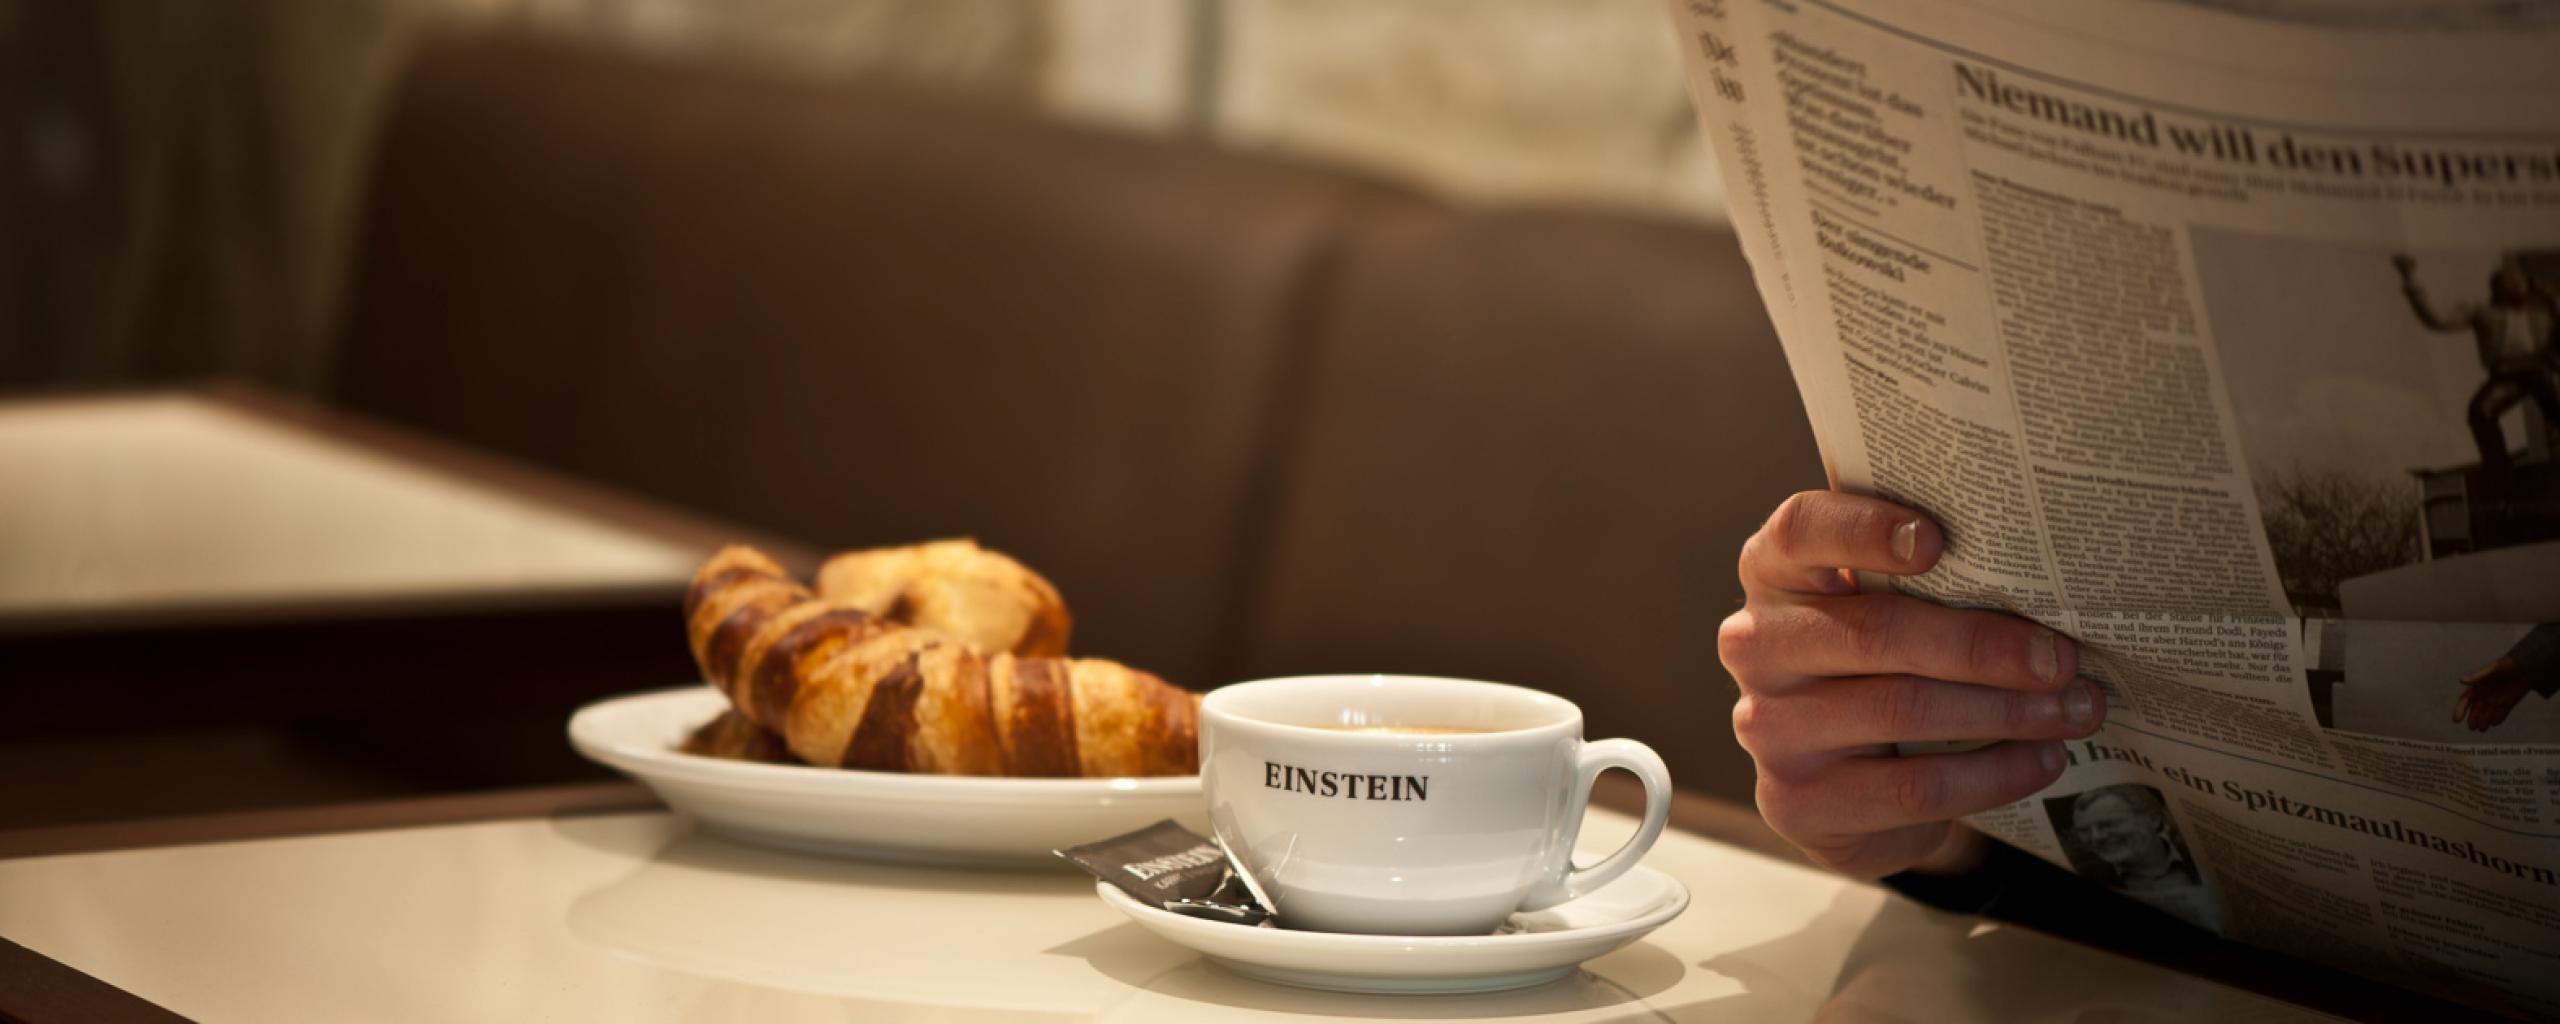 Einstein Kaffee & Rauchsalon